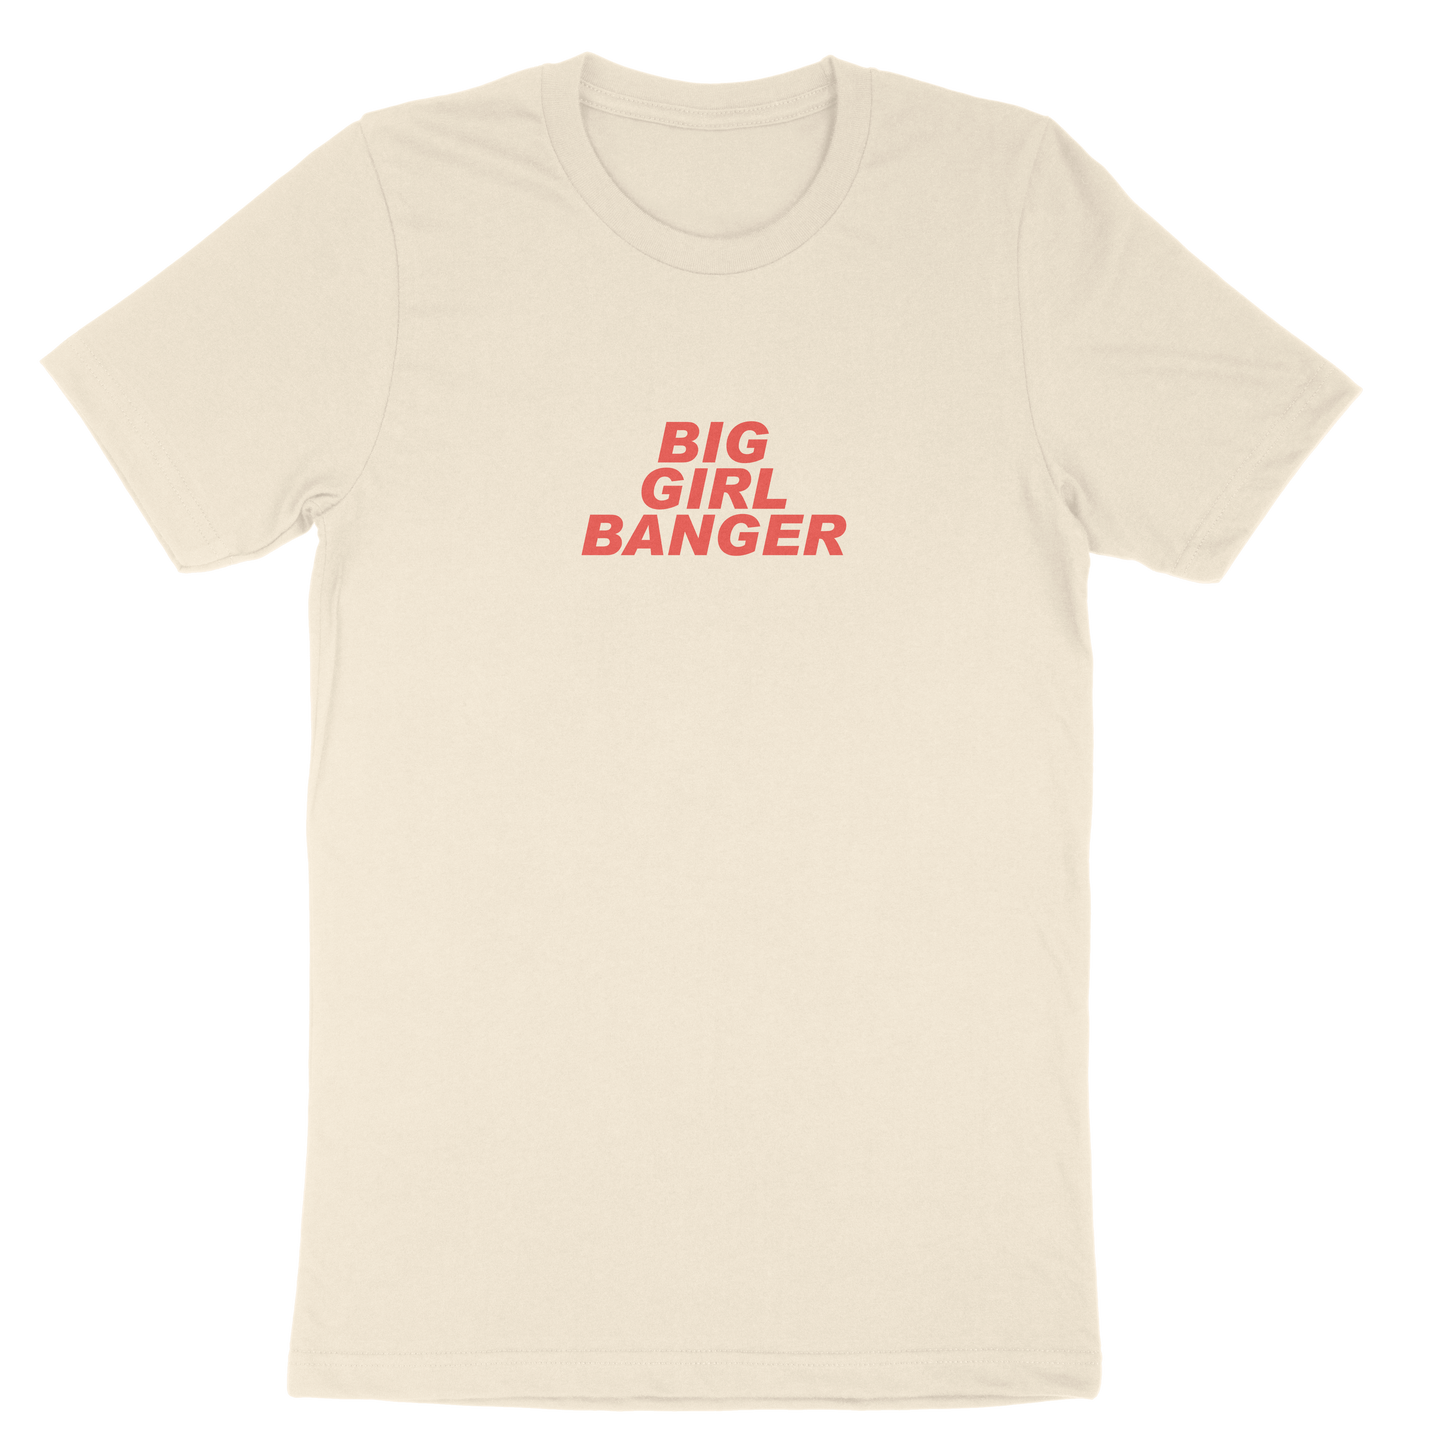 'BIG GIRL BANGER' T-Shirt